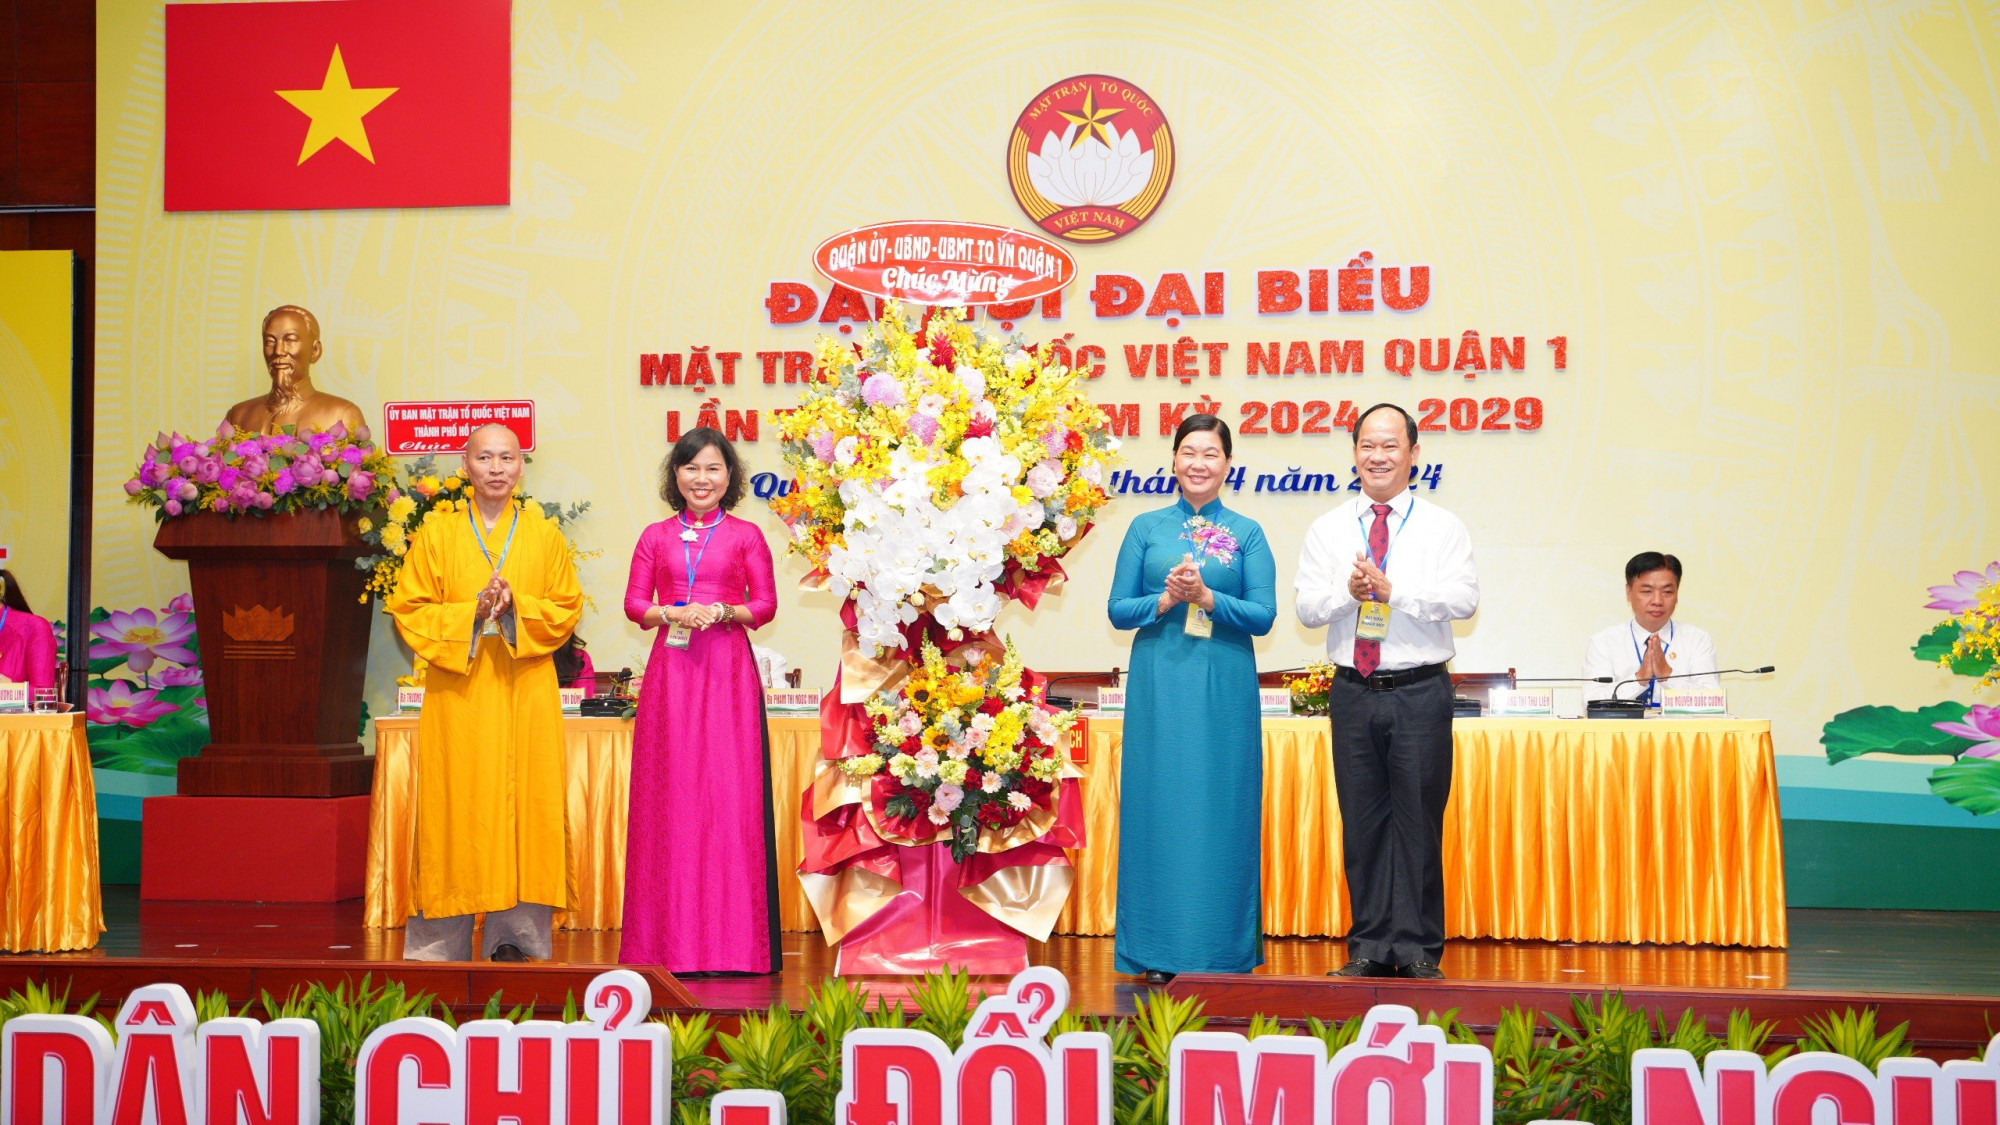 Đại hội Đại biểu MTTQ Việt Nam quận 1 lần thứ XII nhiệm kỳ 2024-2029 cũng đã diễn ra trong hai ngày 3 và 4/4 - Ảnh: N.A.